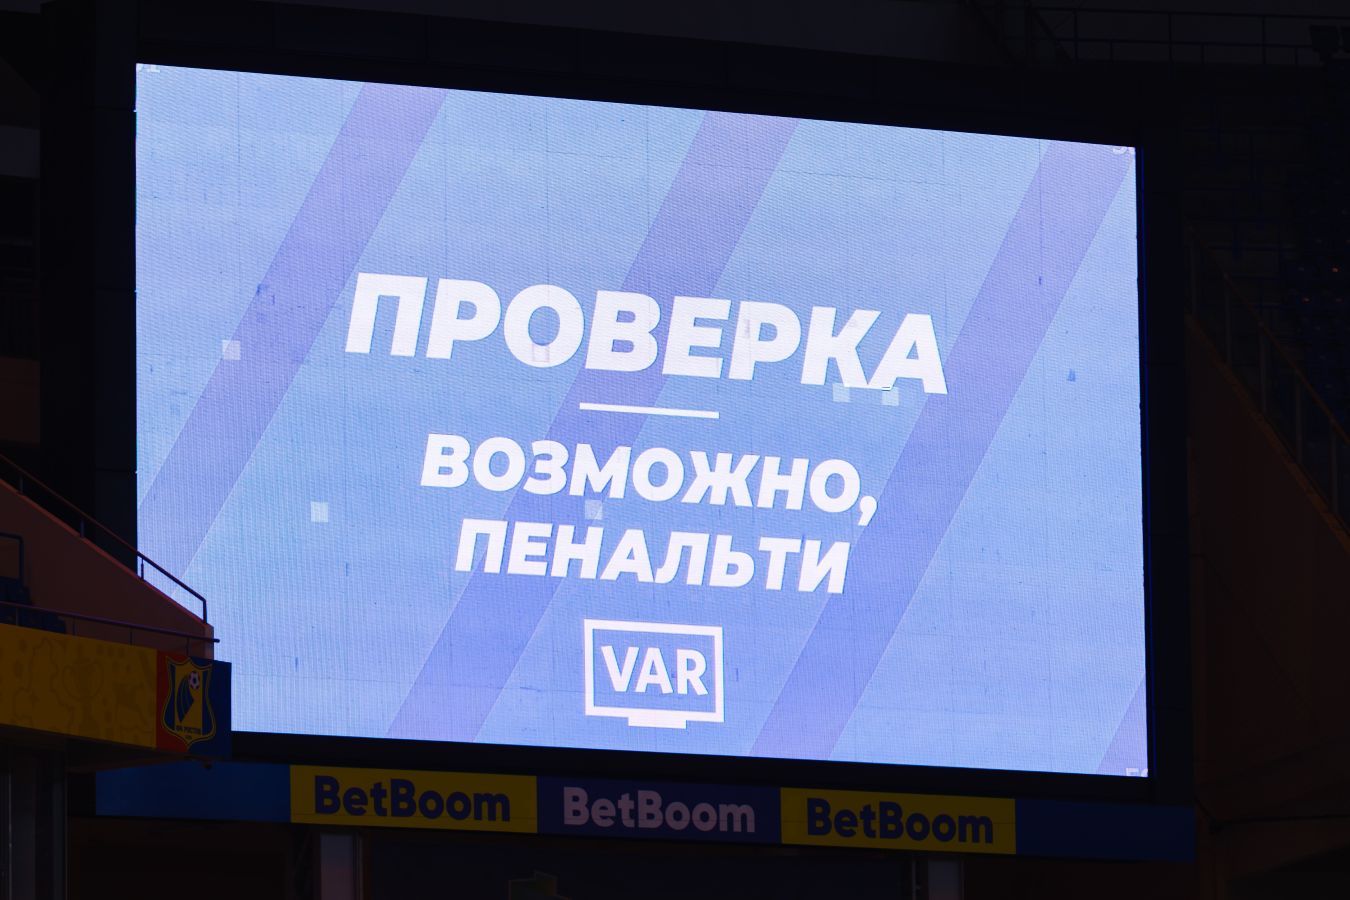 В РПЛ и Кубке России судьи будут объявлять свои решения после VAR на весь стадион